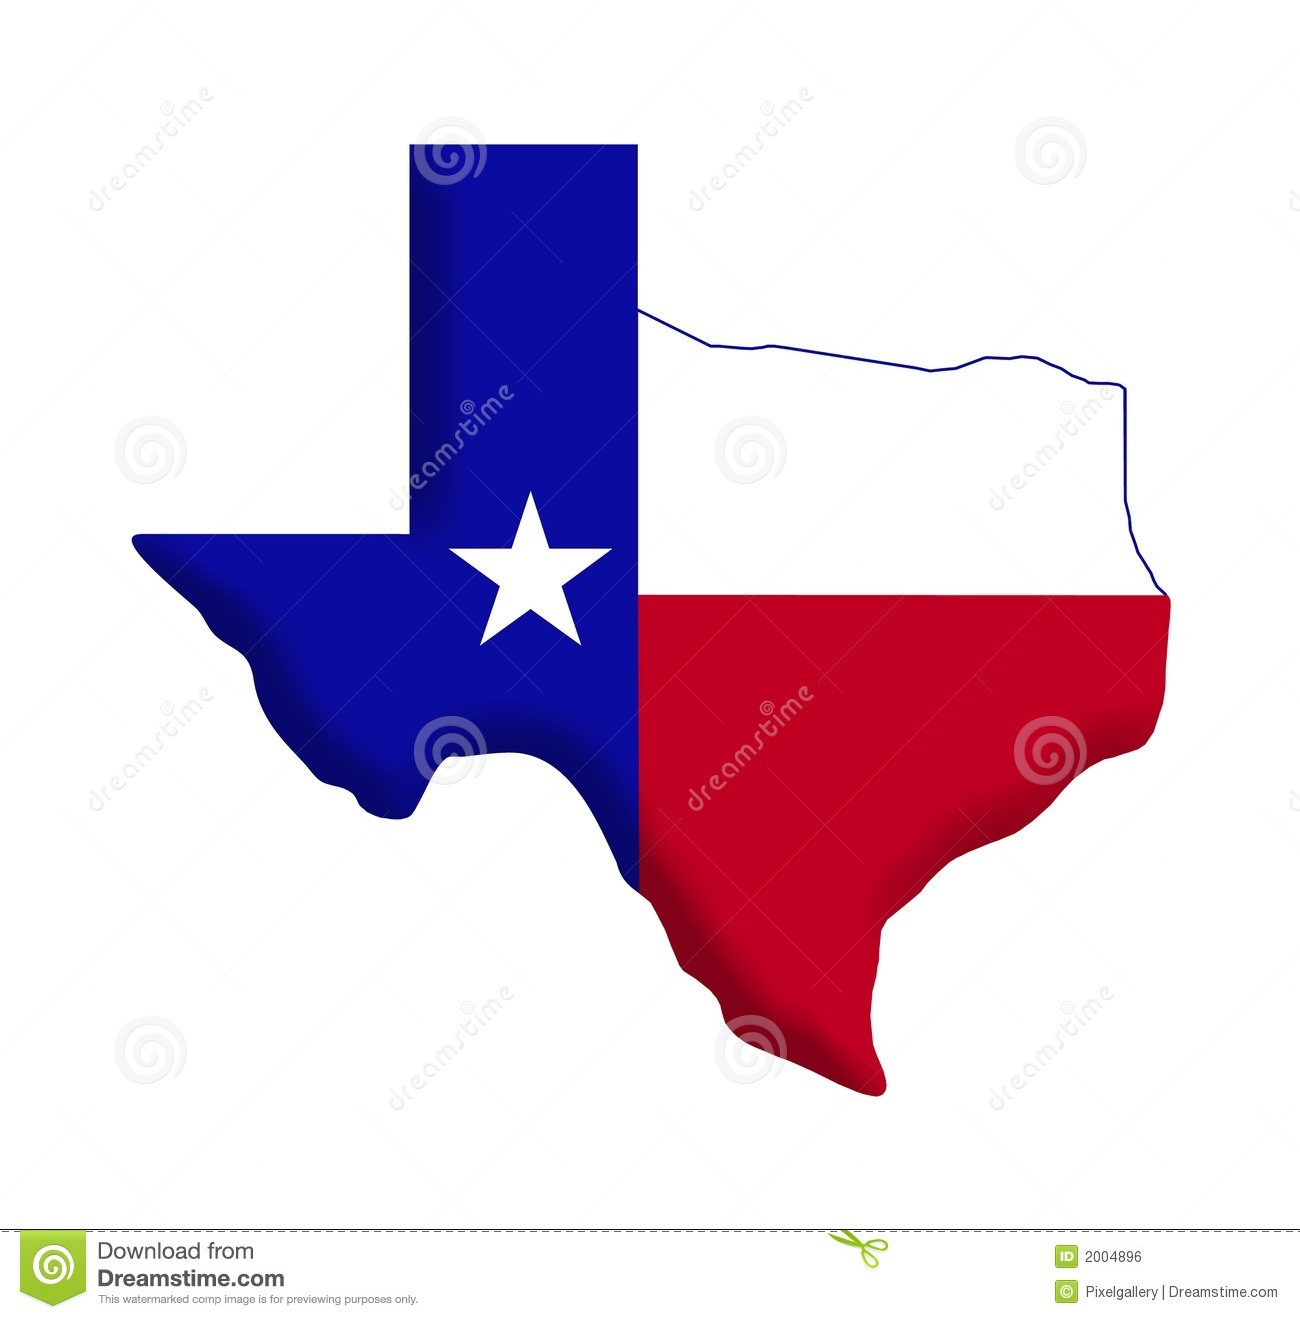 Strength-coach-texas-flag